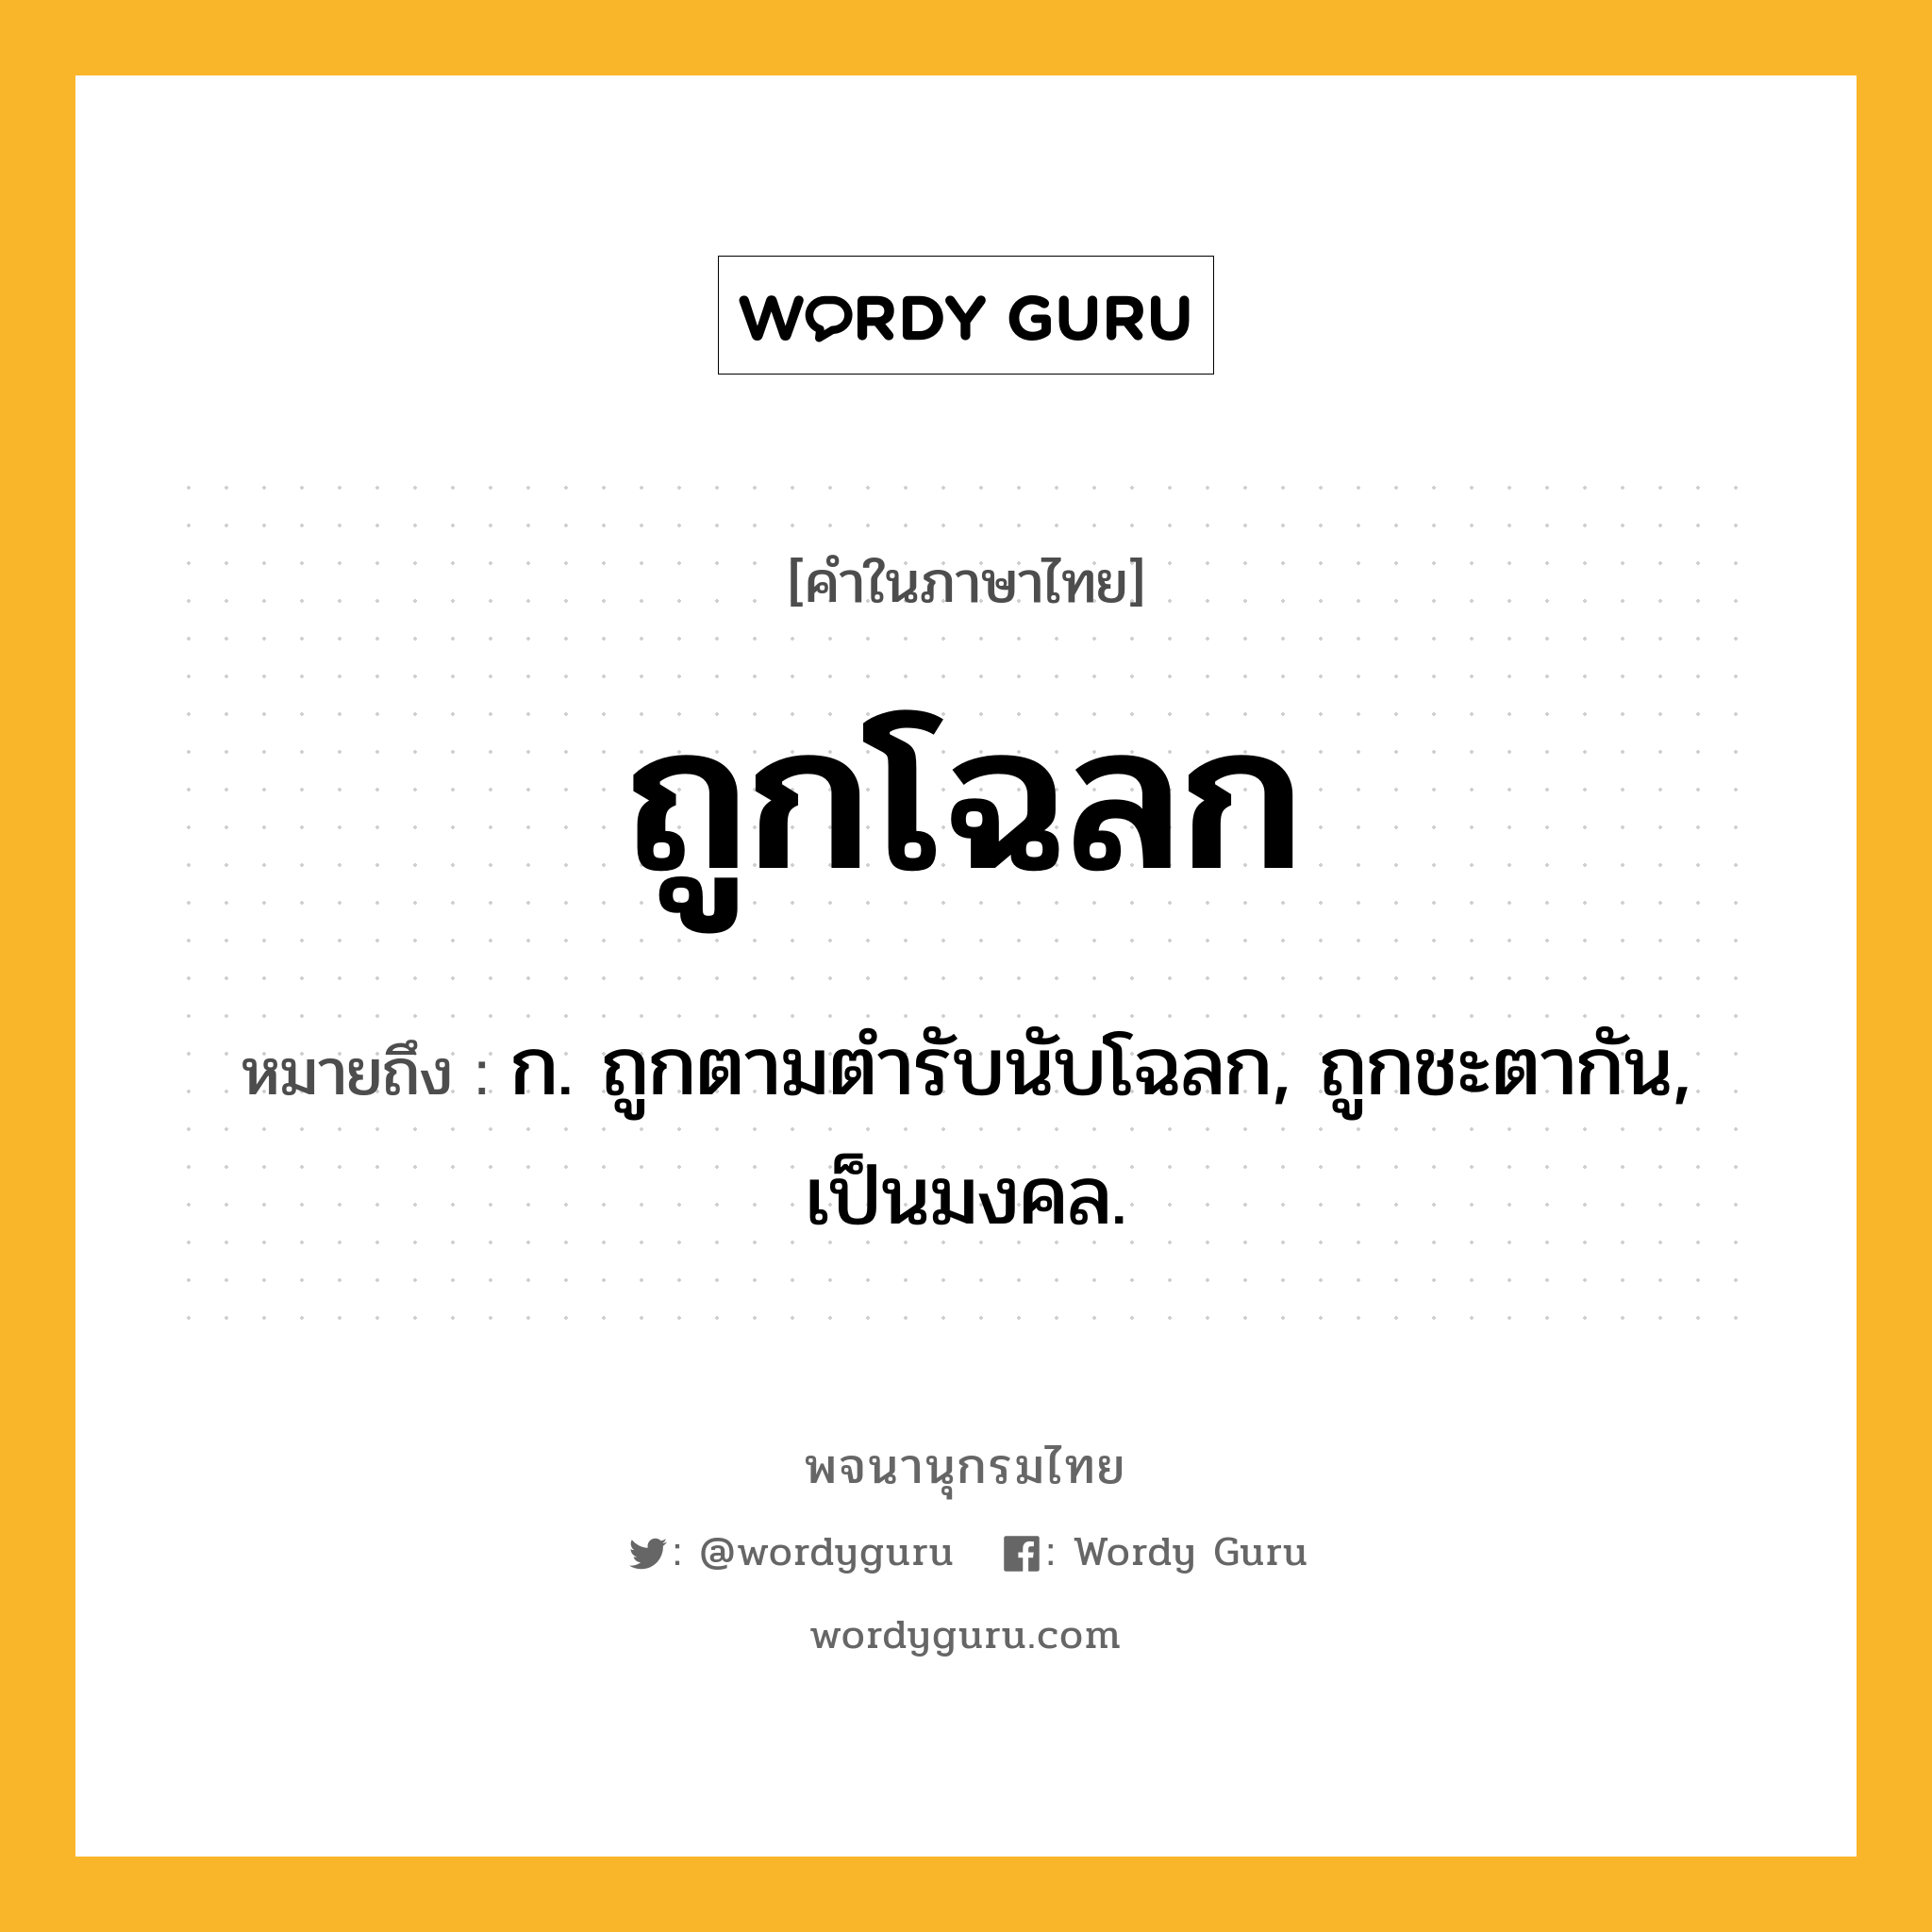 ถูกโฉลก ความหมาย หมายถึงอะไร?, คำในภาษาไทย ถูกโฉลก หมายถึง ก. ถูกตามตำรับนับโฉลก, ถูกชะตากัน, เป็นมงคล.